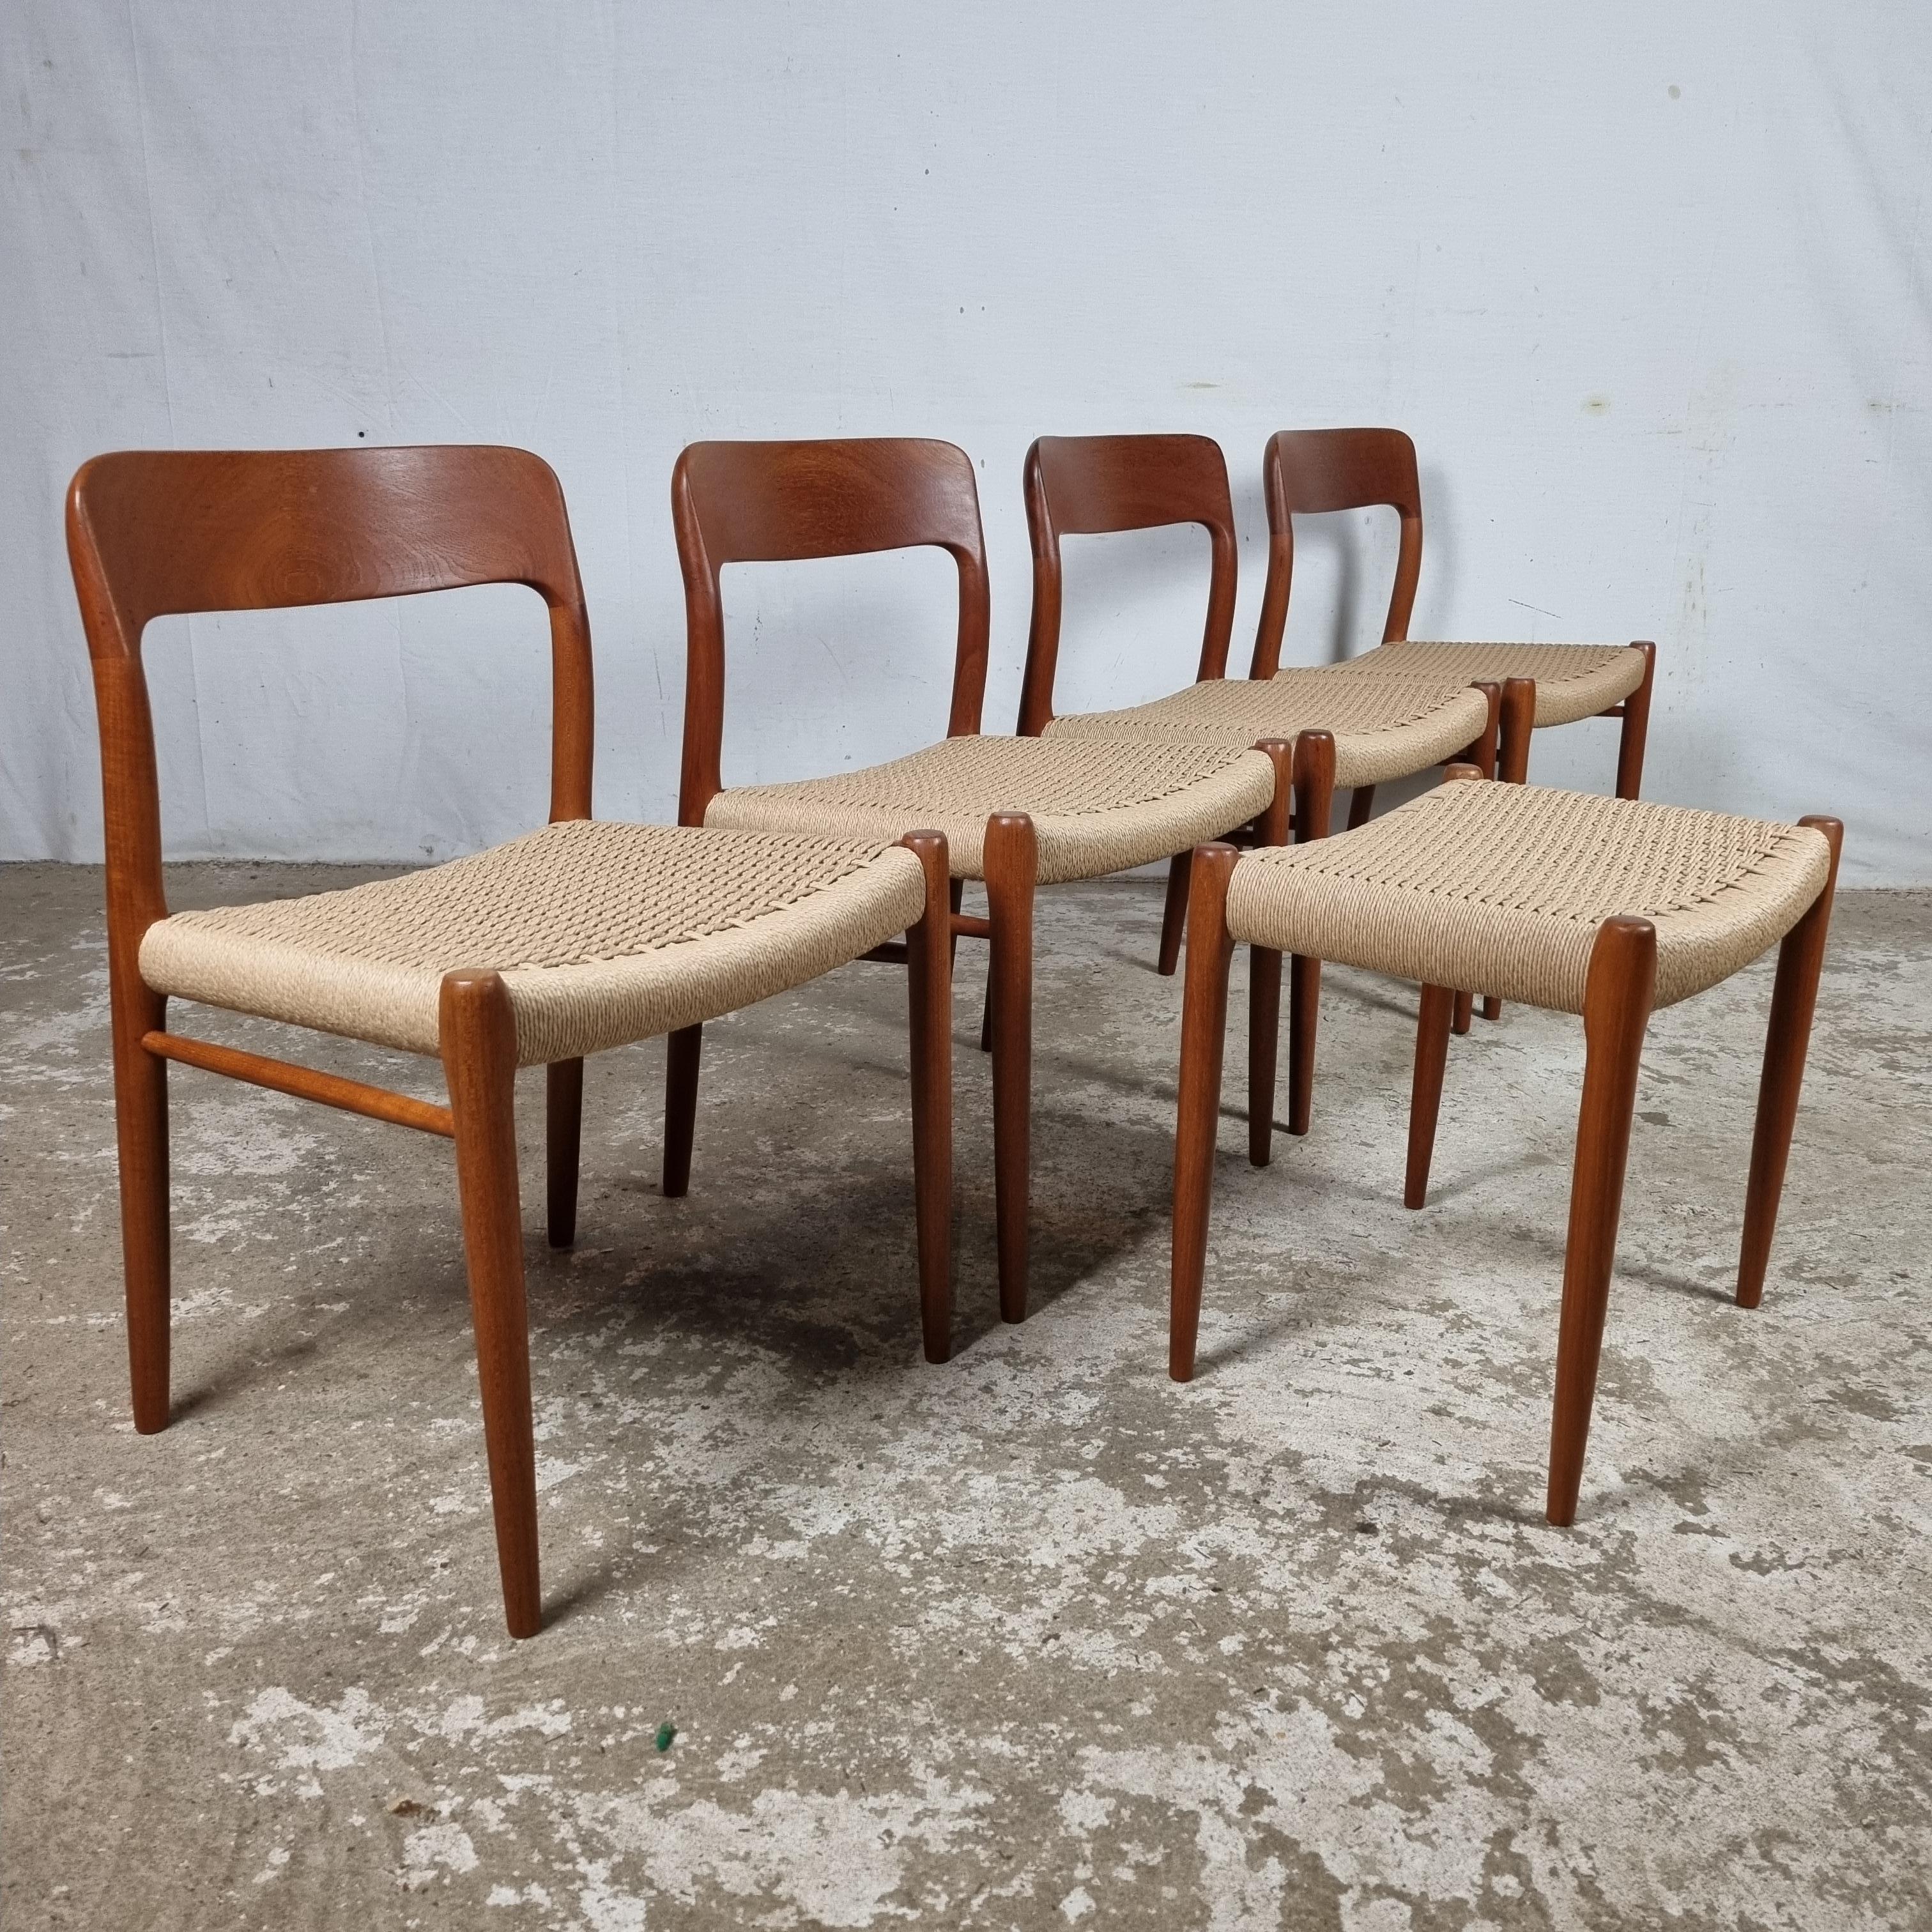 Hochwertiges dänisches Design aus den 1960er Jahren. Eine Kreation von Niels Otto Møller für sein J.L. Møller-Fabrik in Hojbjerg, Denmark🇩🇰.

Dieses besondere Modell Nr. 75 wurde im Jahr 1954 entworfen. 

Die 4 Stühle sind original alte